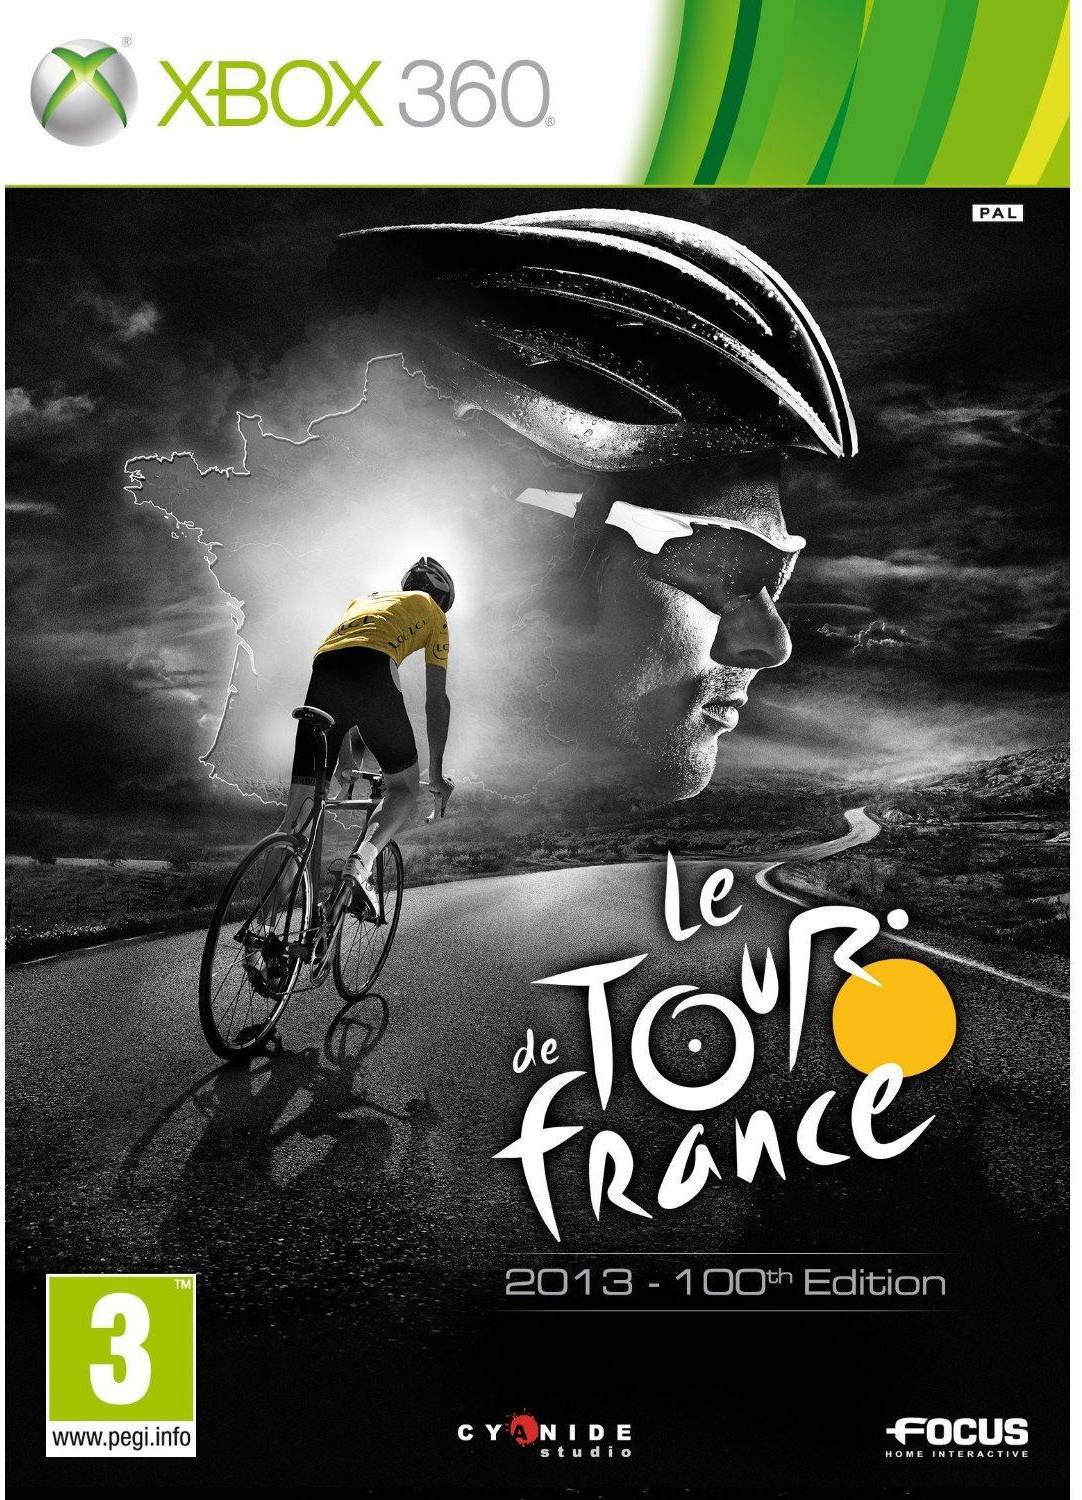 Le Tour de France 2013 - 100th Edition (Xbox 360)